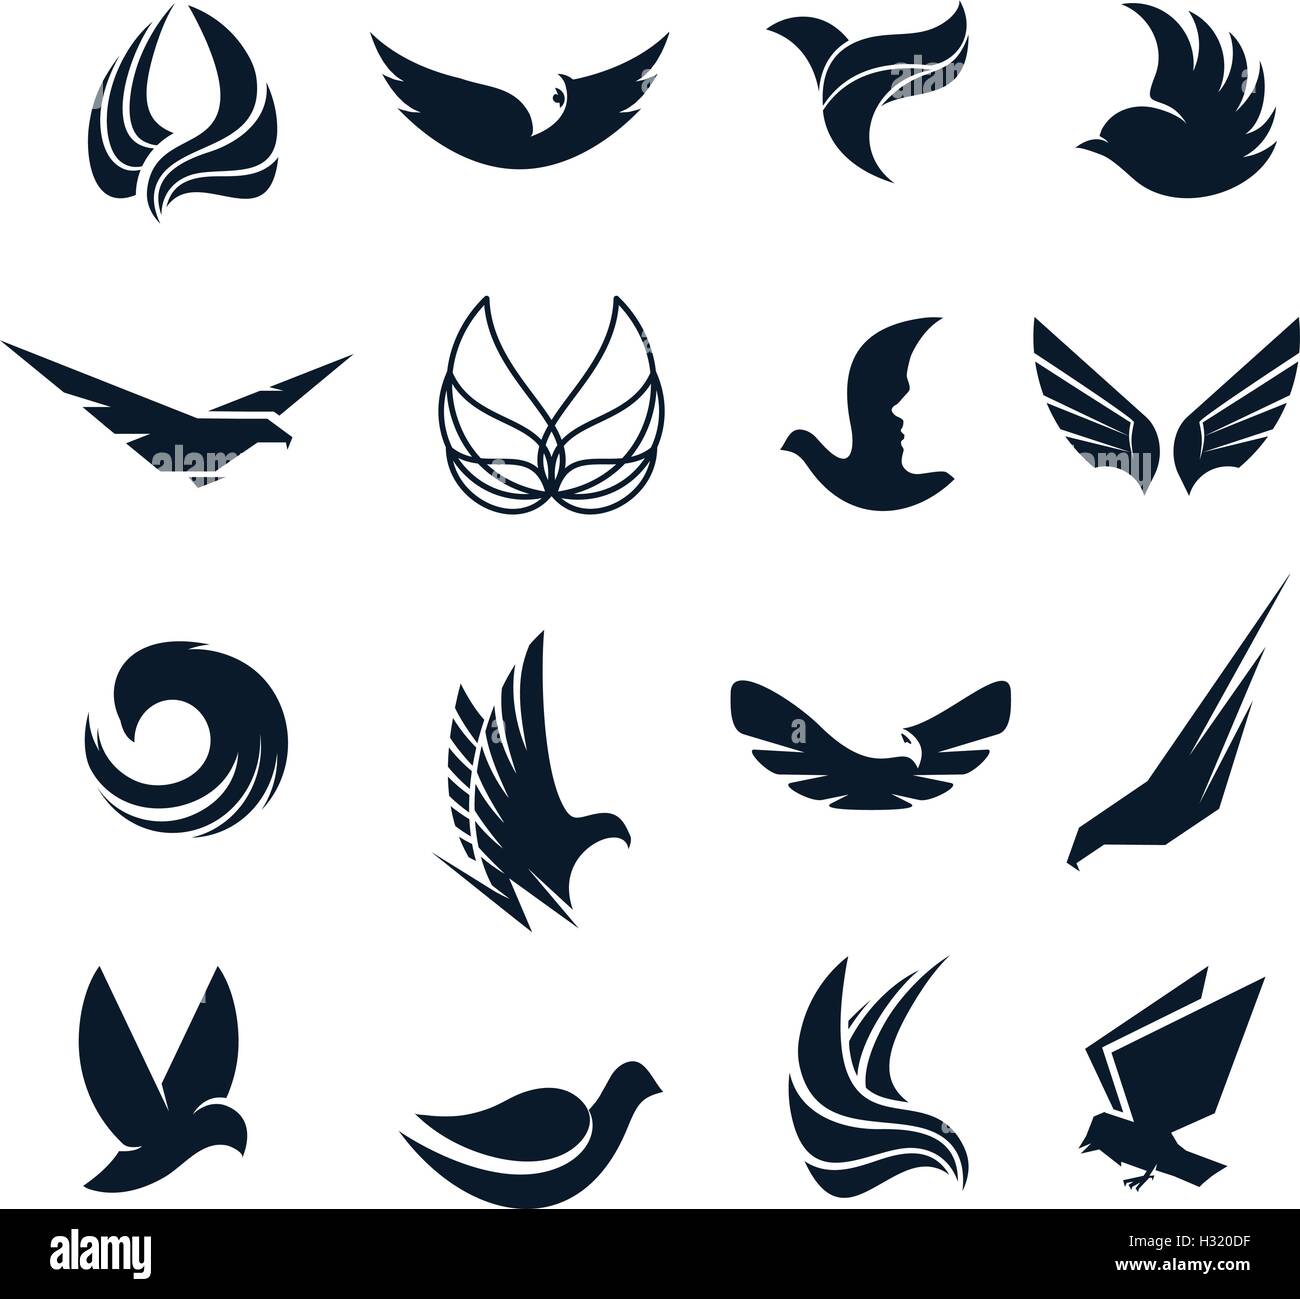 Abstract isolato in bianco e nero di uccelli, ali delle farfalle con piume logo set. Logotipo di volo di raccolta. Icone dell'aria. Illustrazione Vettoriale. Eagle,pigeon,hawk silhouette . Illustrazione Vettoriale